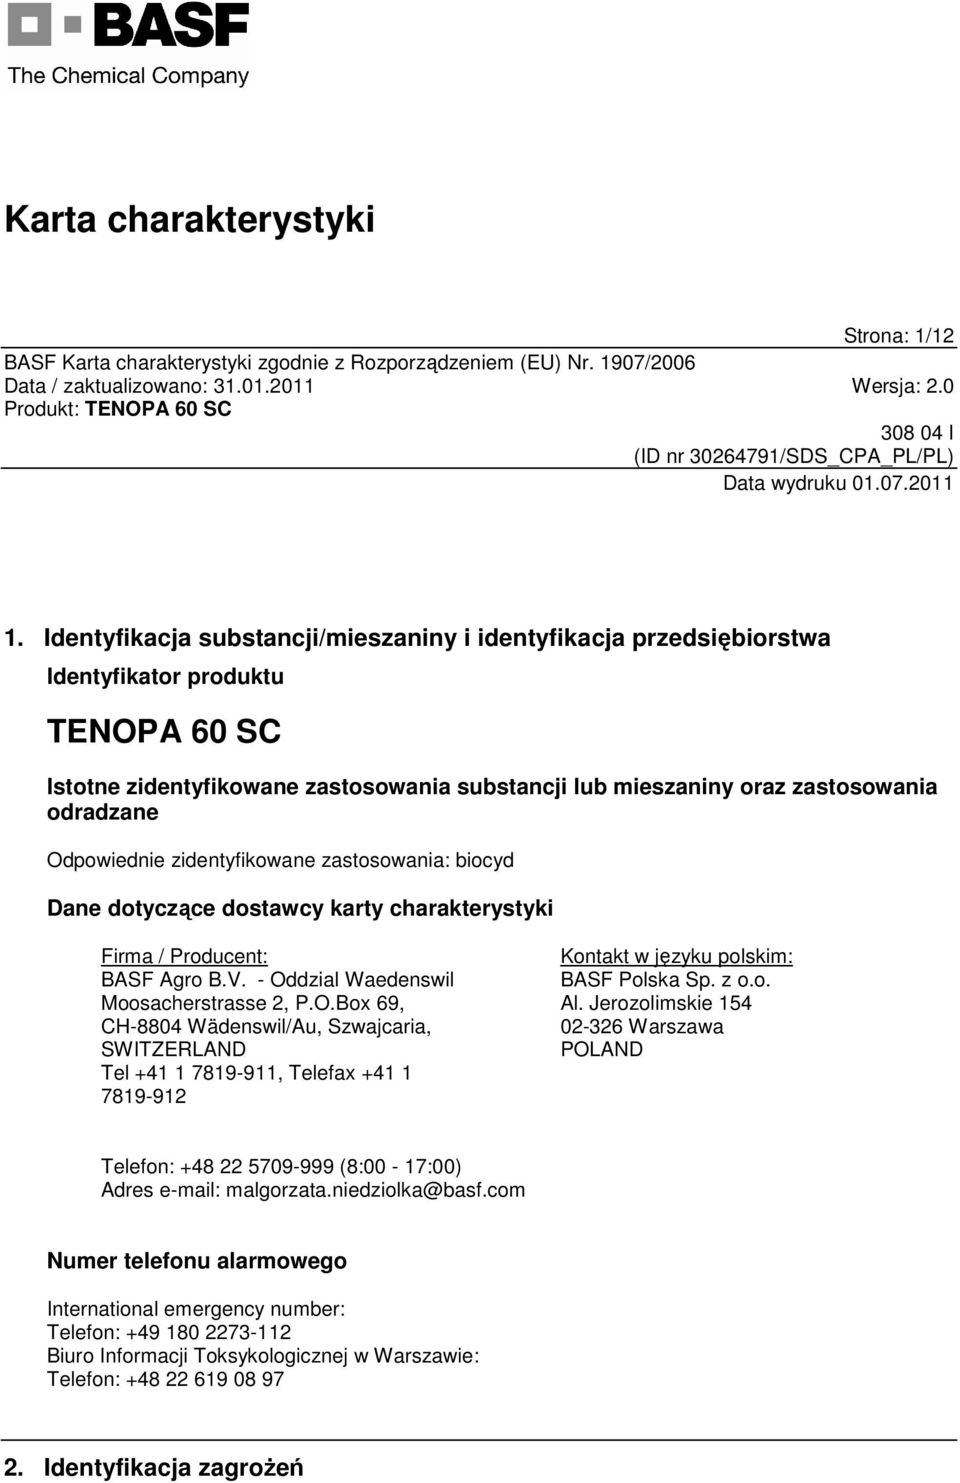 Odpowiednie zidentyfikowane zastosowania: biocyd Dane dotyczące dostawcy karty charakterystyki Firma / Producent: BASF Agro B.V. - Oddzial Waedenswil Moosacherstrasse 2, P.O.Box 69, CH-8804 Wädenswil/Au, Szwajcaria, SWITZERLAND Tel +41 1 7819-911, Telefax +41 1 7819-912 Kontakt w języku polskim: BASF Polska Sp.